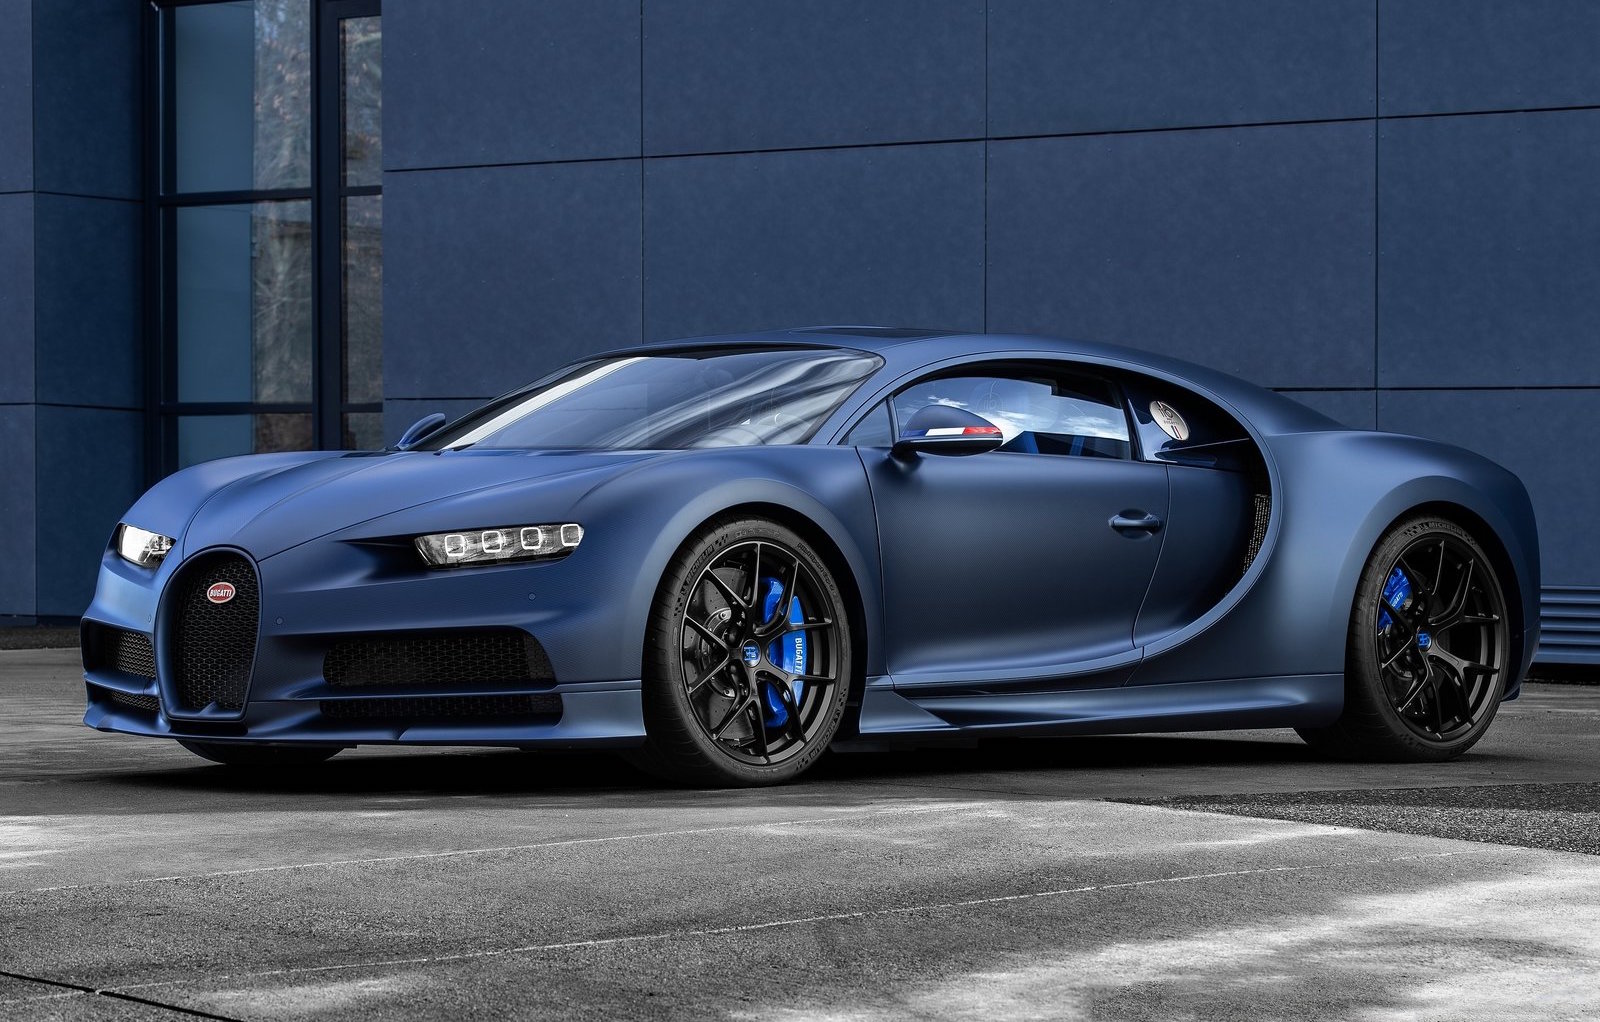 Bugatti Chiron ‘110 ans Bugatti’ edition celebrates 110th anniversary